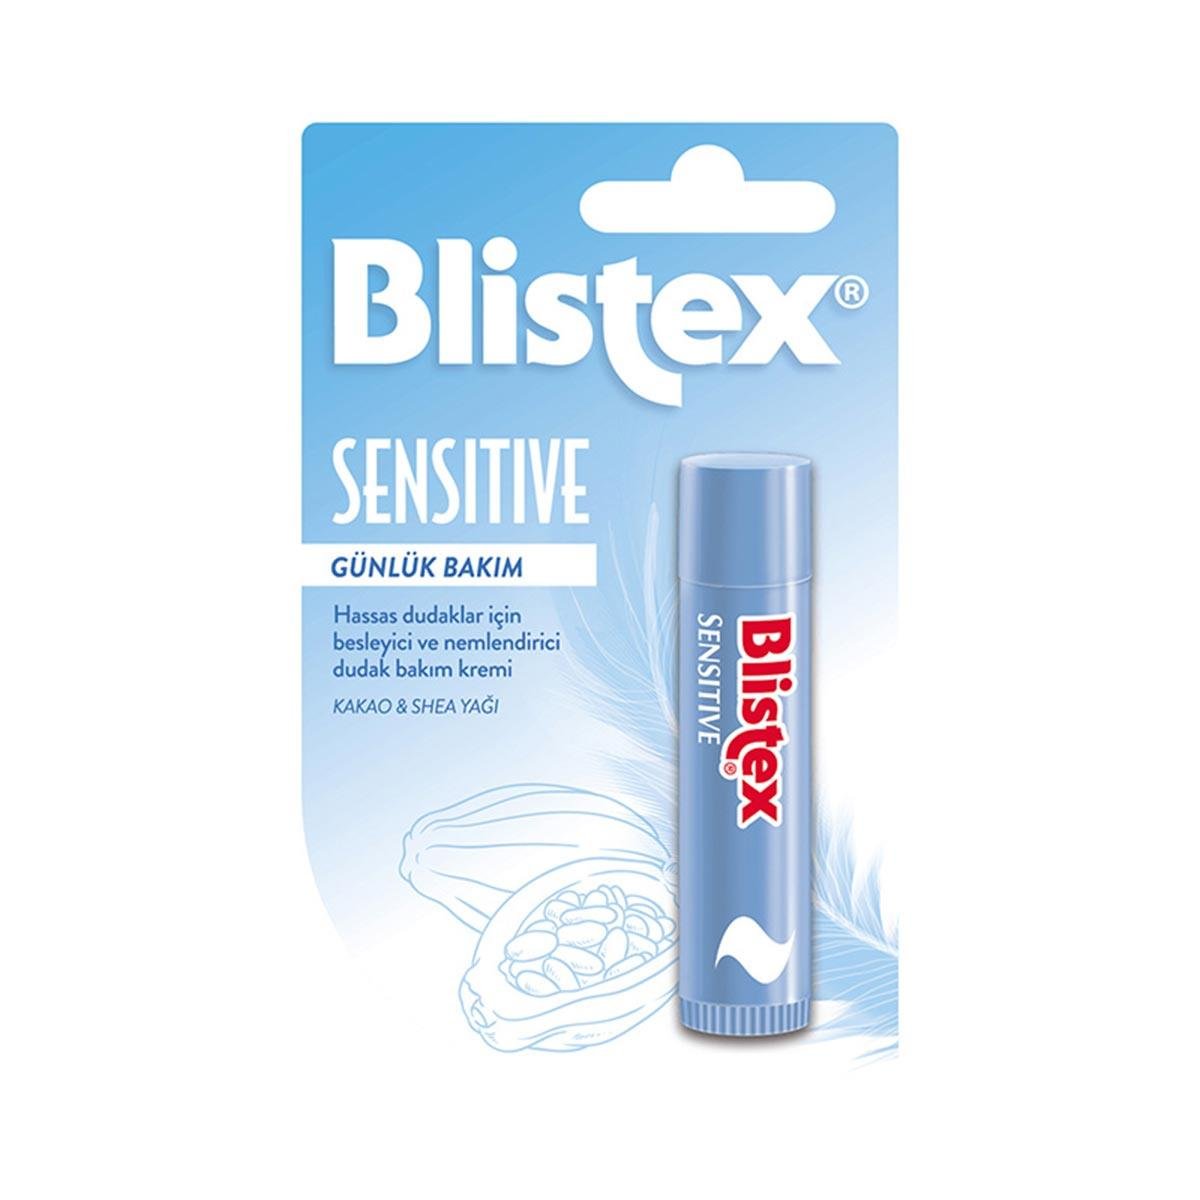 Blistex Sensitive Hassas Dudaklar İçin Besleyici ve Nemlendirici Dudak  Bakım Kremi 3.7 gr - Daffne